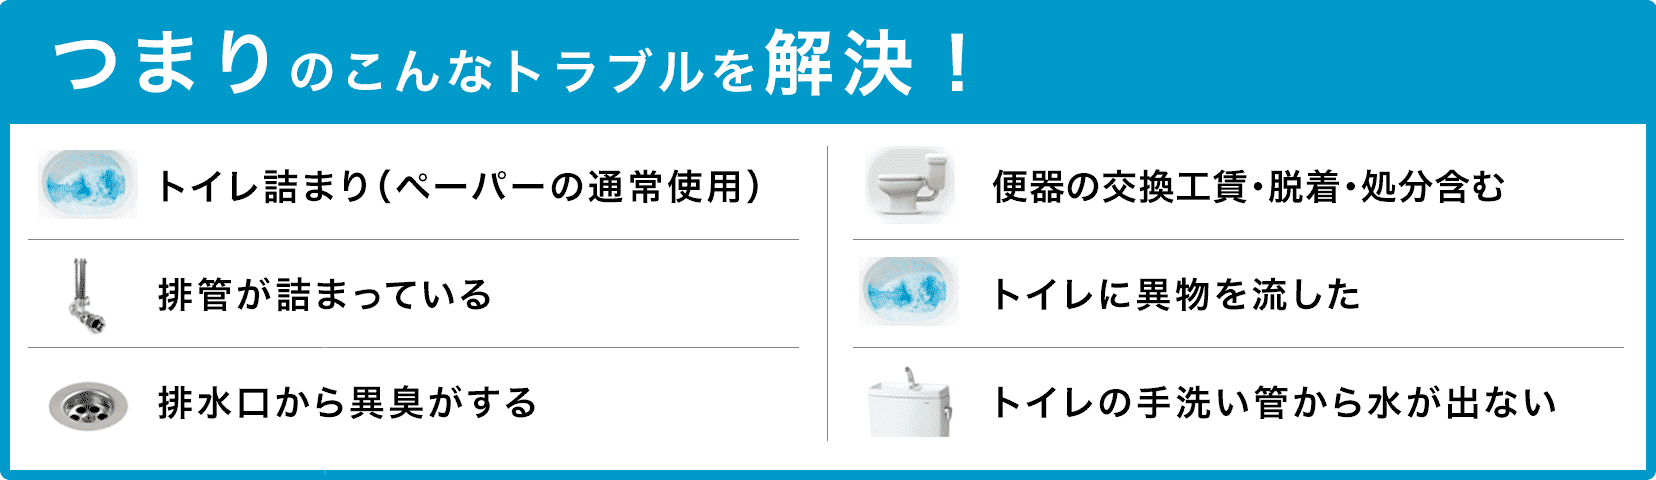 トイレタンクの水が止まらない/トイレタンクから水が出ない/トイレつまり（ペーパーの通常使用)/トイレに異物を流した/便器の交換（工賃のみ)・脱着・処分含む/トイレの手洗い管から水が出ない/ウォッシュレットの取付作業 京都市南区